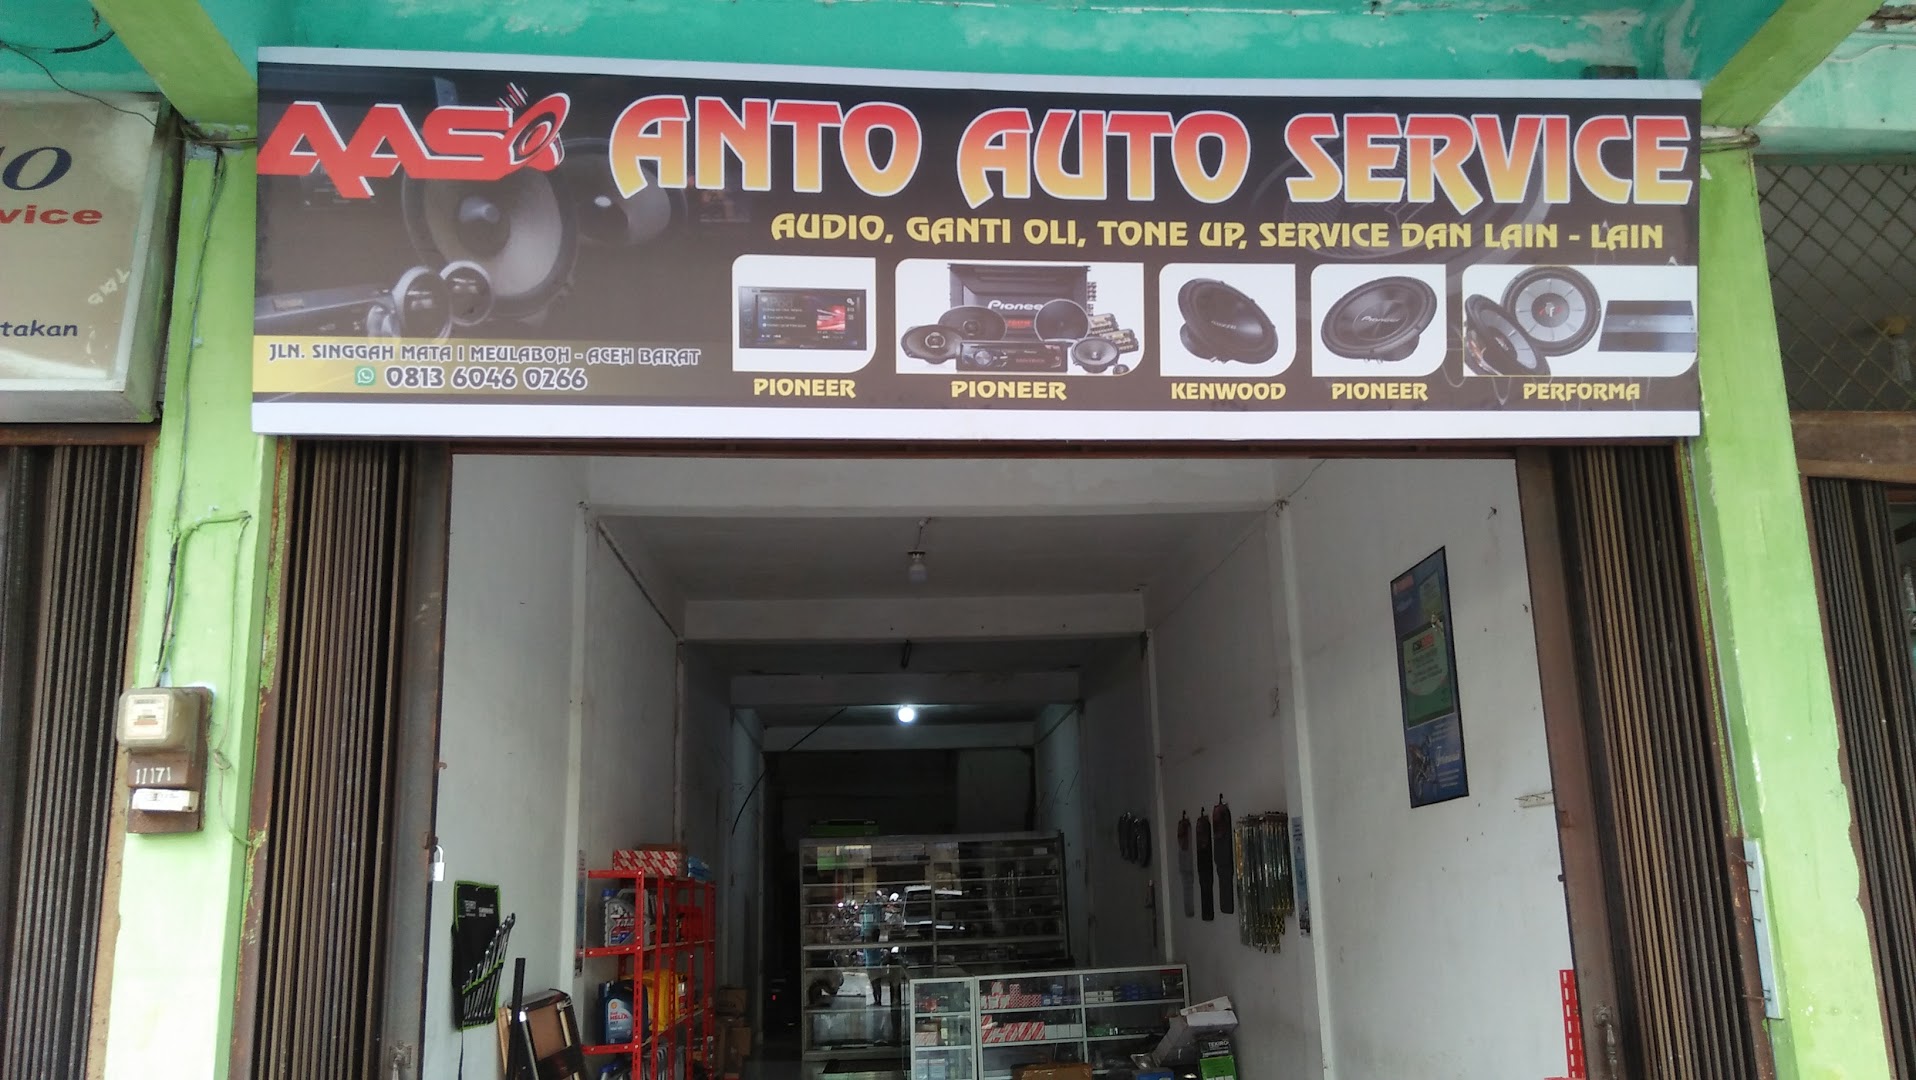 Gambar Anto Auto Service